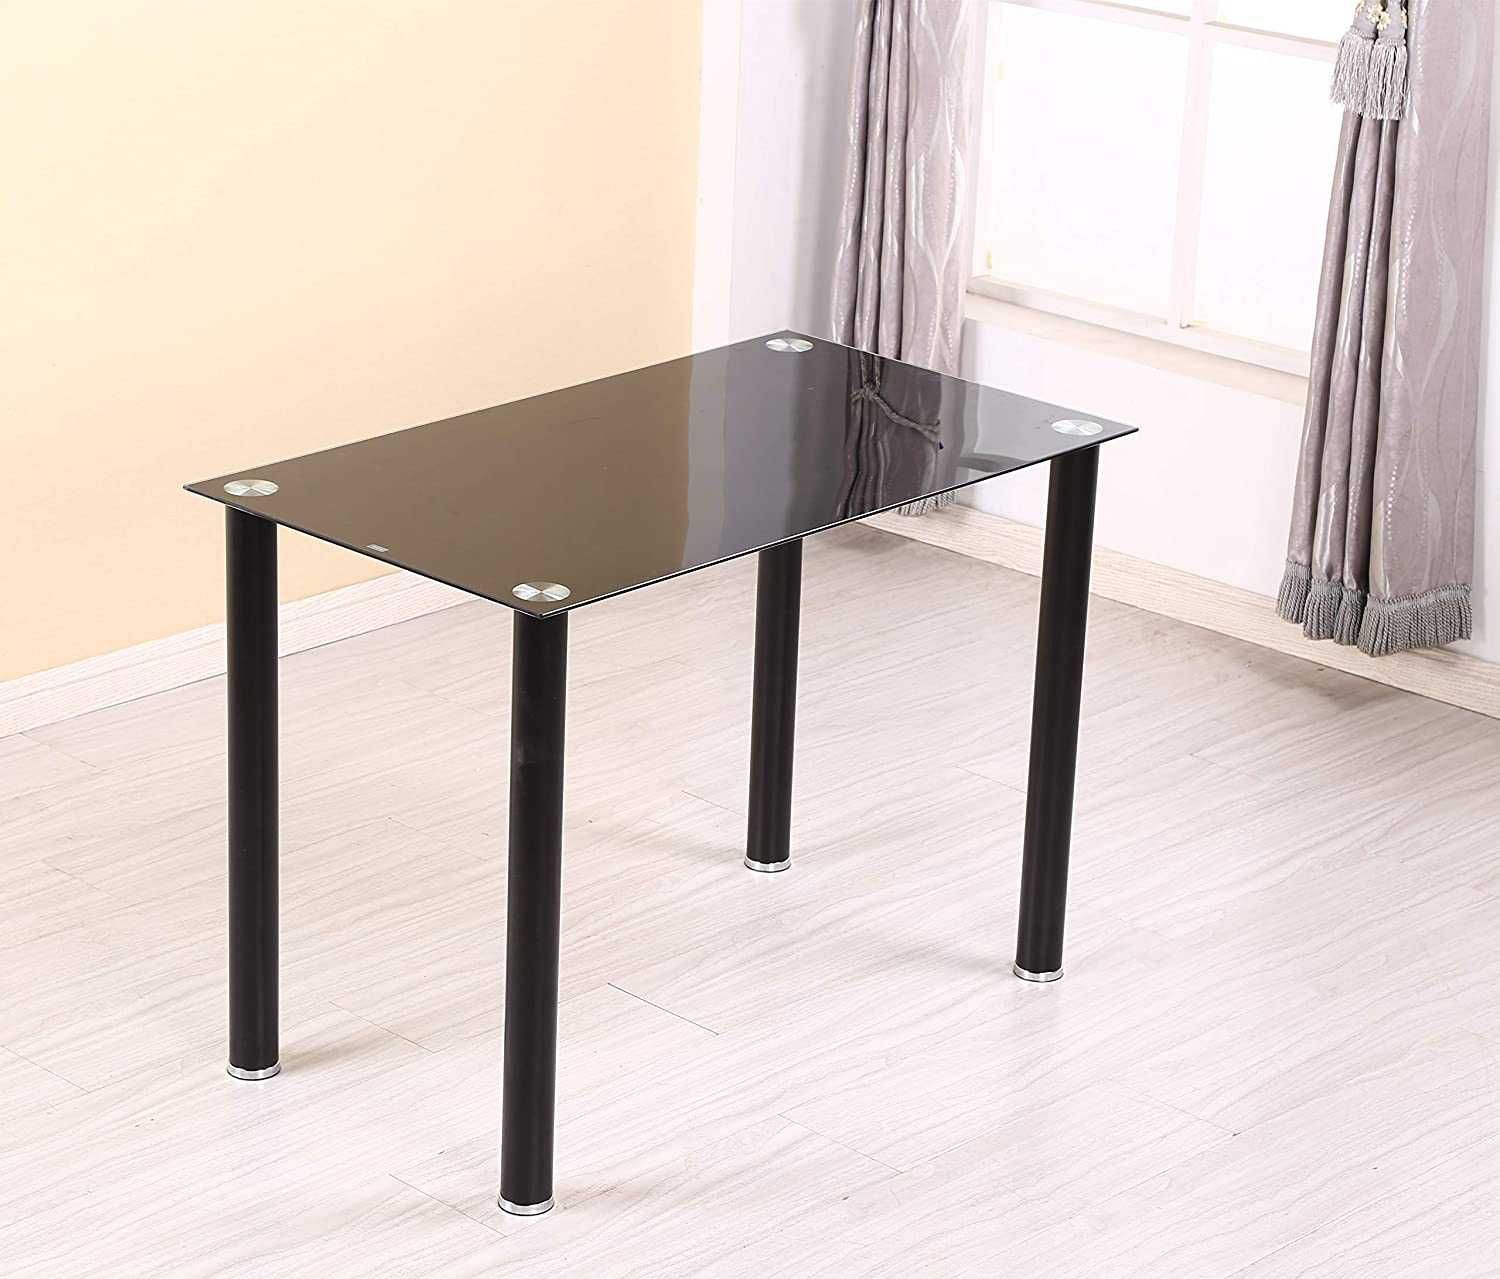 Комплект стол кухонный 120 см + 4 стула / Польша